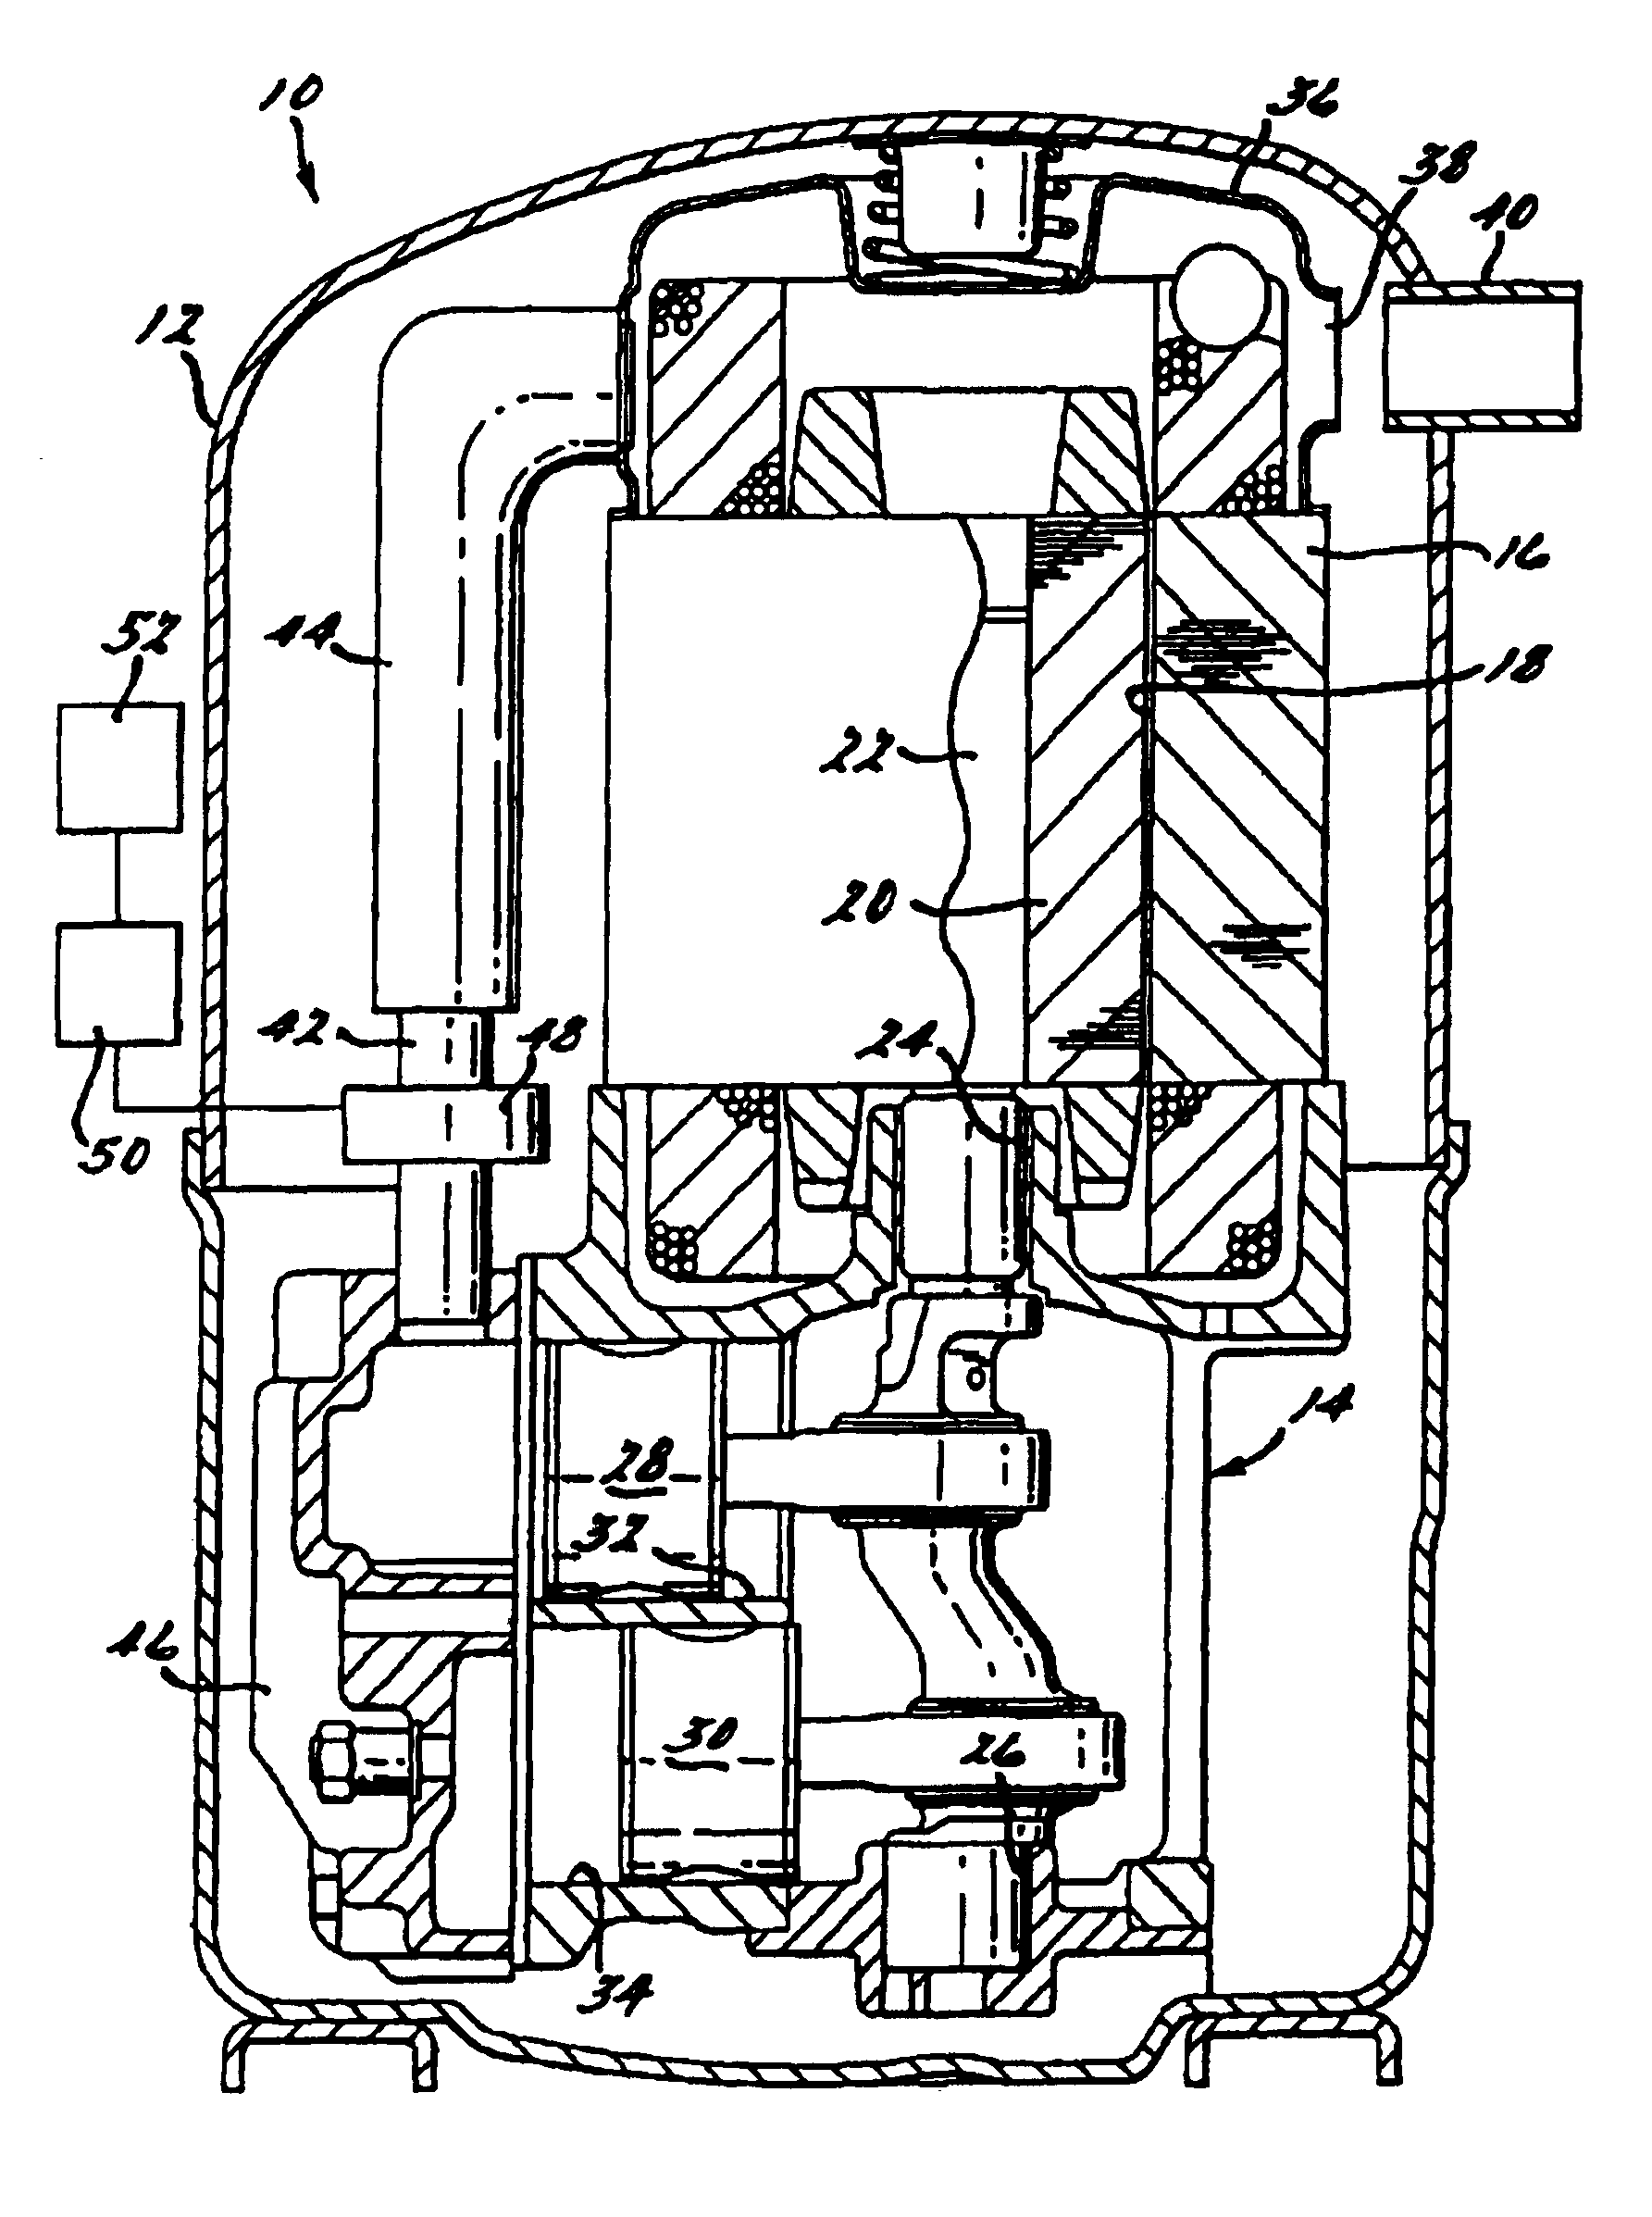 Compressor capacity modulation